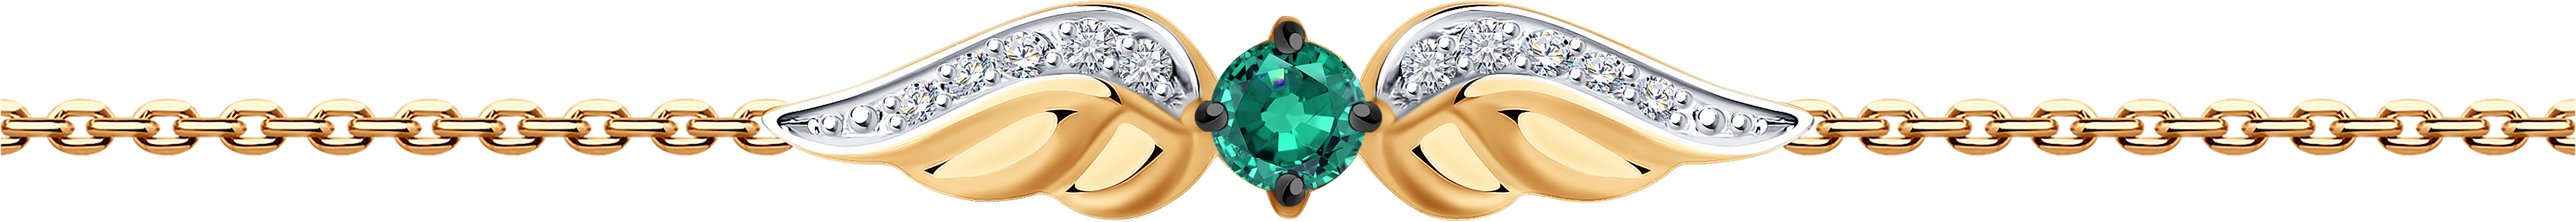 Ювелирные майкоп. SOKOLOV Diamonds браслет. 750 Gold Bracelet with Diamonds and Sapphires 0.28CT.